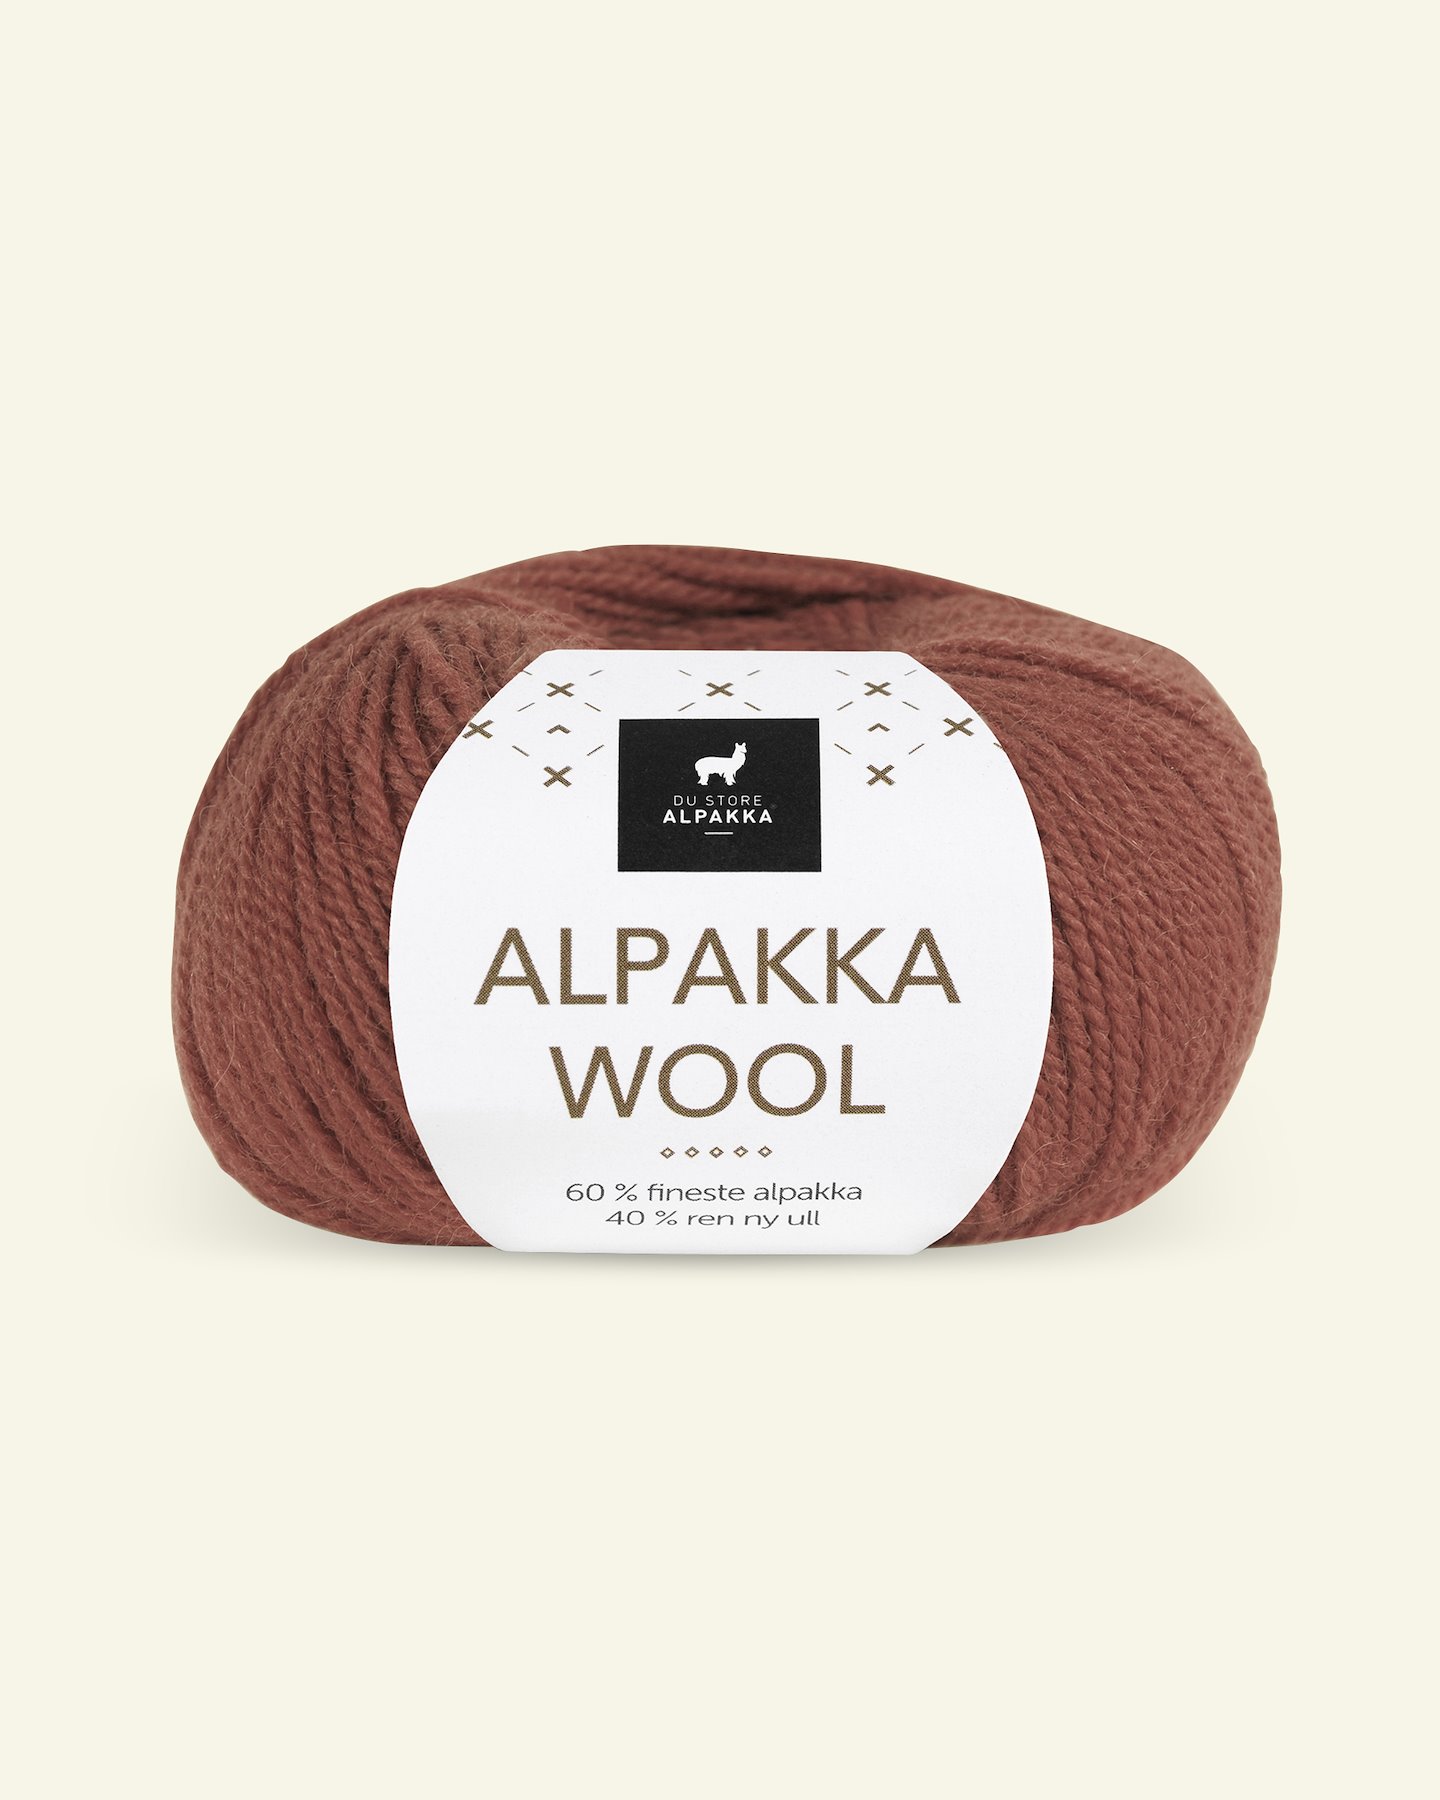 Du Store Alpakka, alpaca uldgarn "Alpakka Wool", rust (532) 90000561_pack